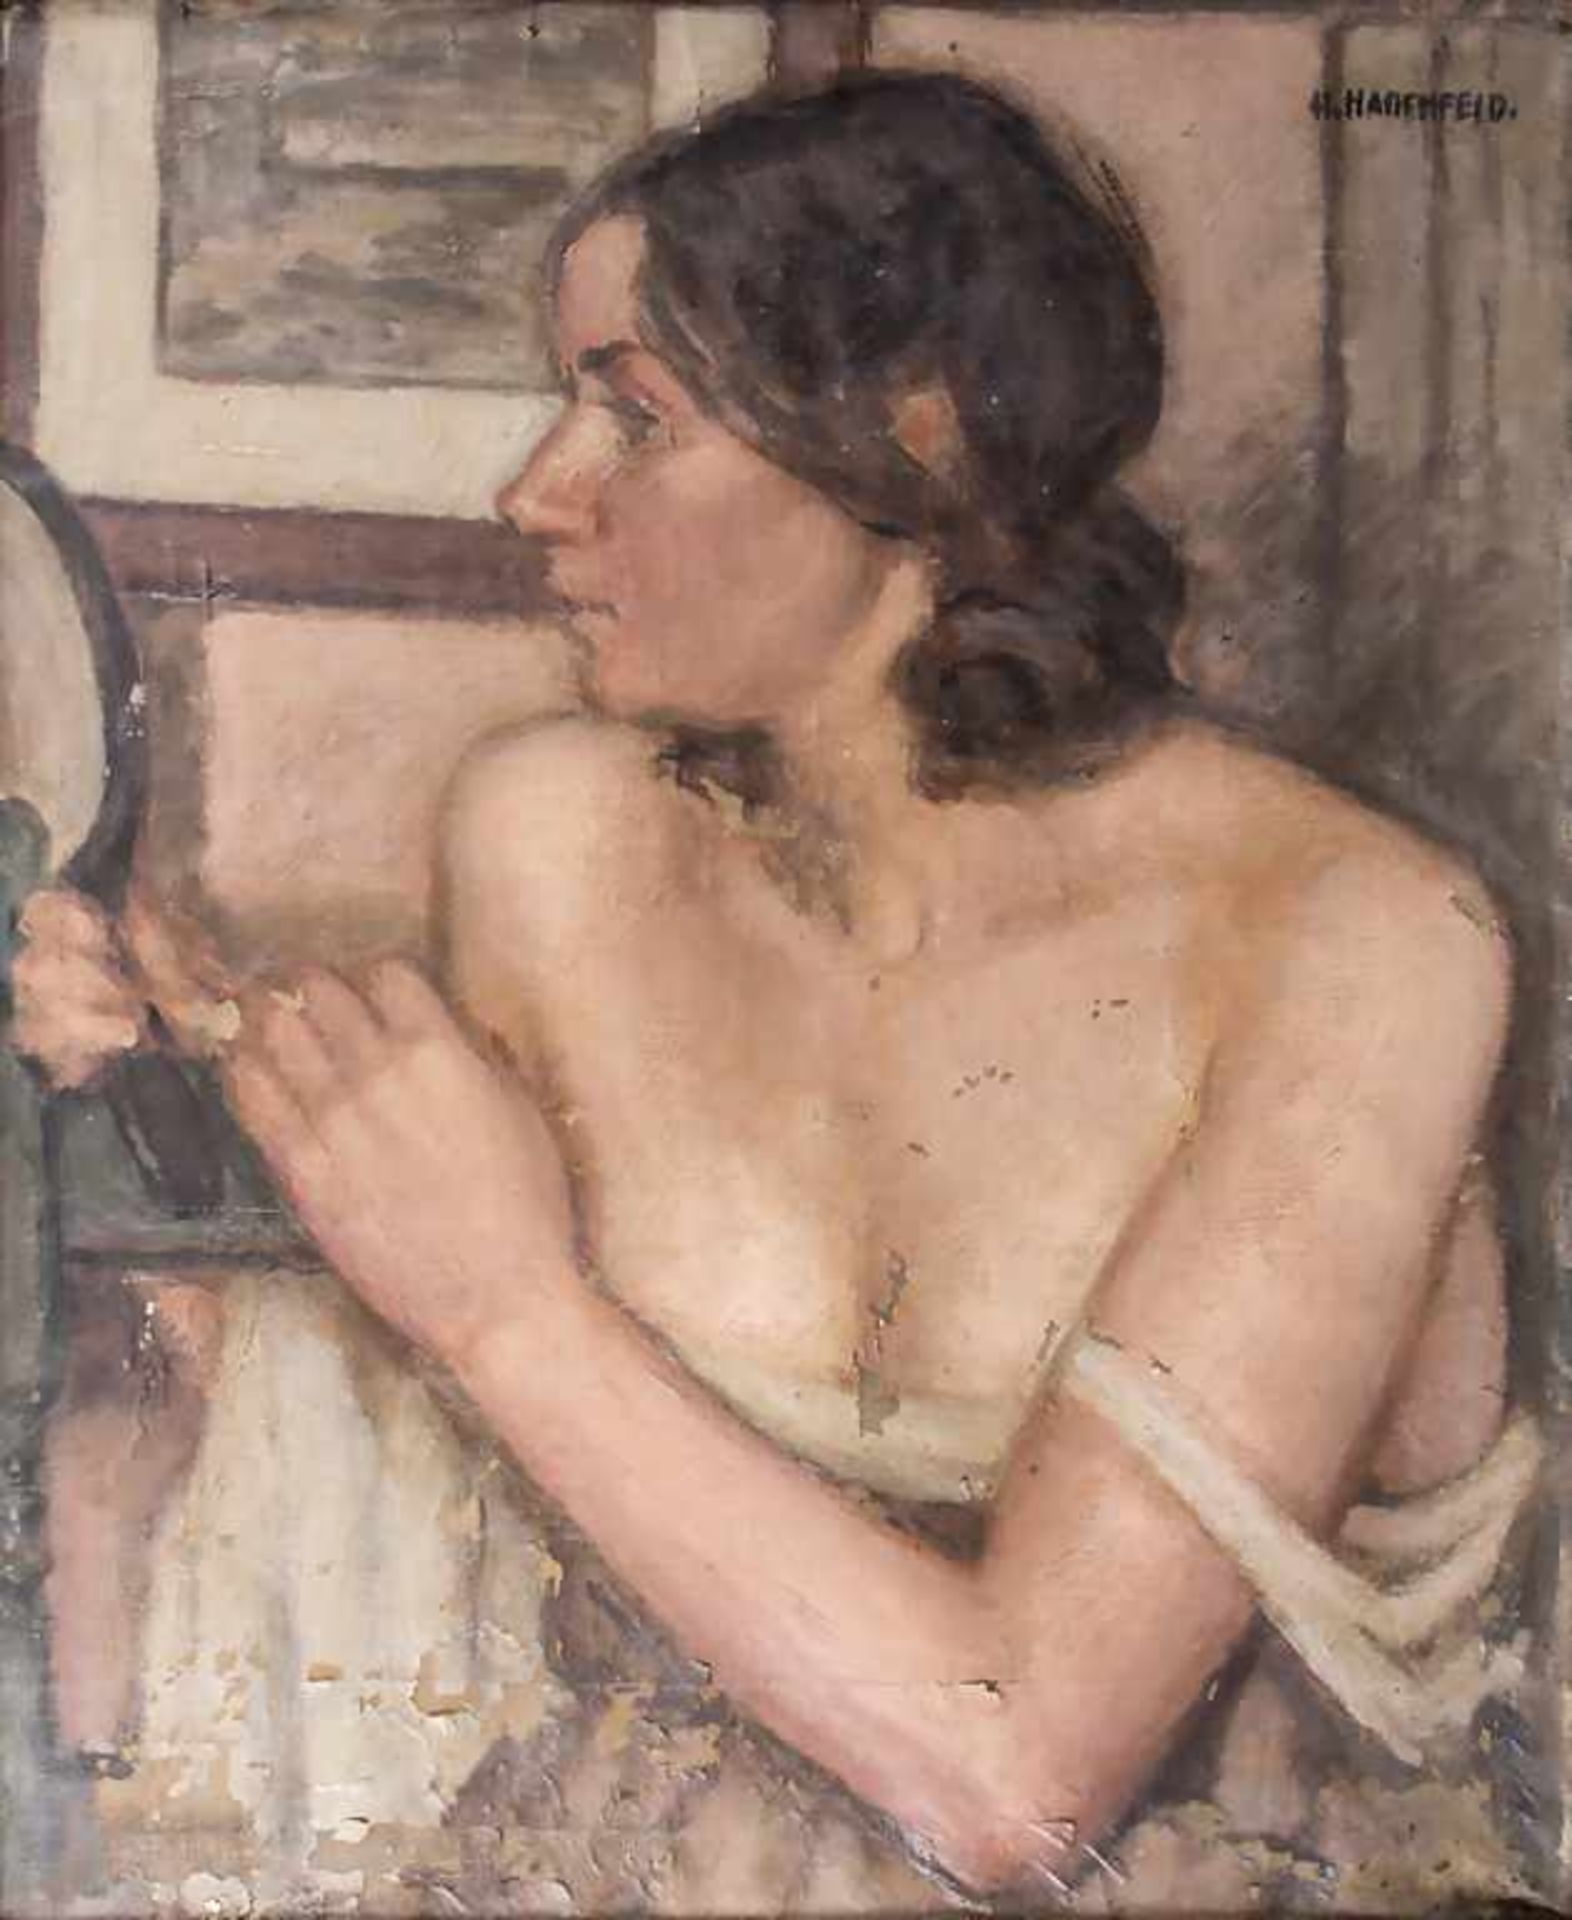 Claus Heinrich Hadenfeld (1878-1943), 'Brustbild einer jungen Dame' / 'A portrait of a young lad